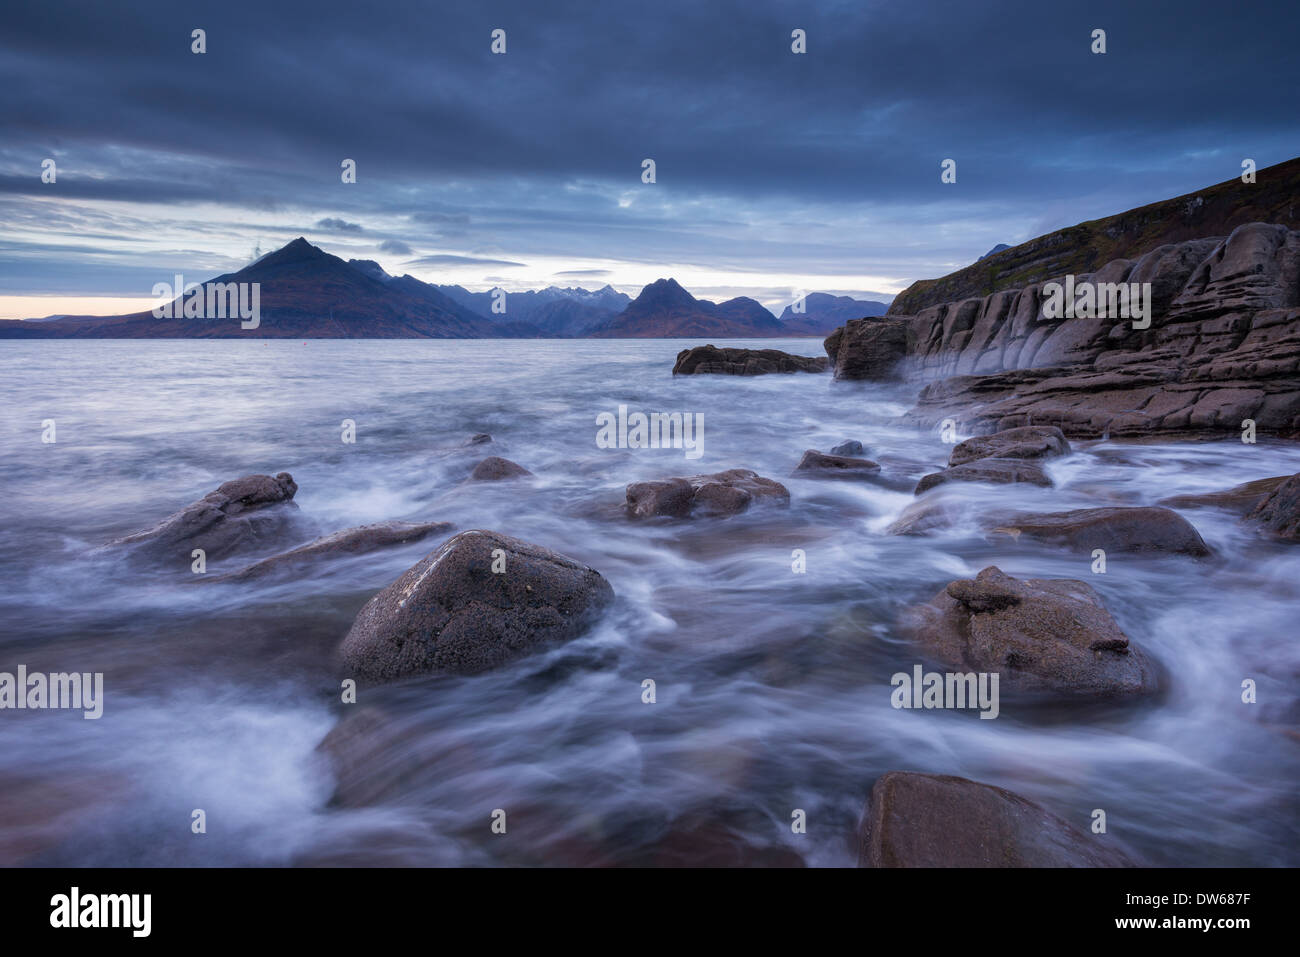 Autour de la pointe des vagues les rivages rocailleux de Elgol, île de Skye, en Ecosse. Hiver (décembre) 2013. Banque D'Images